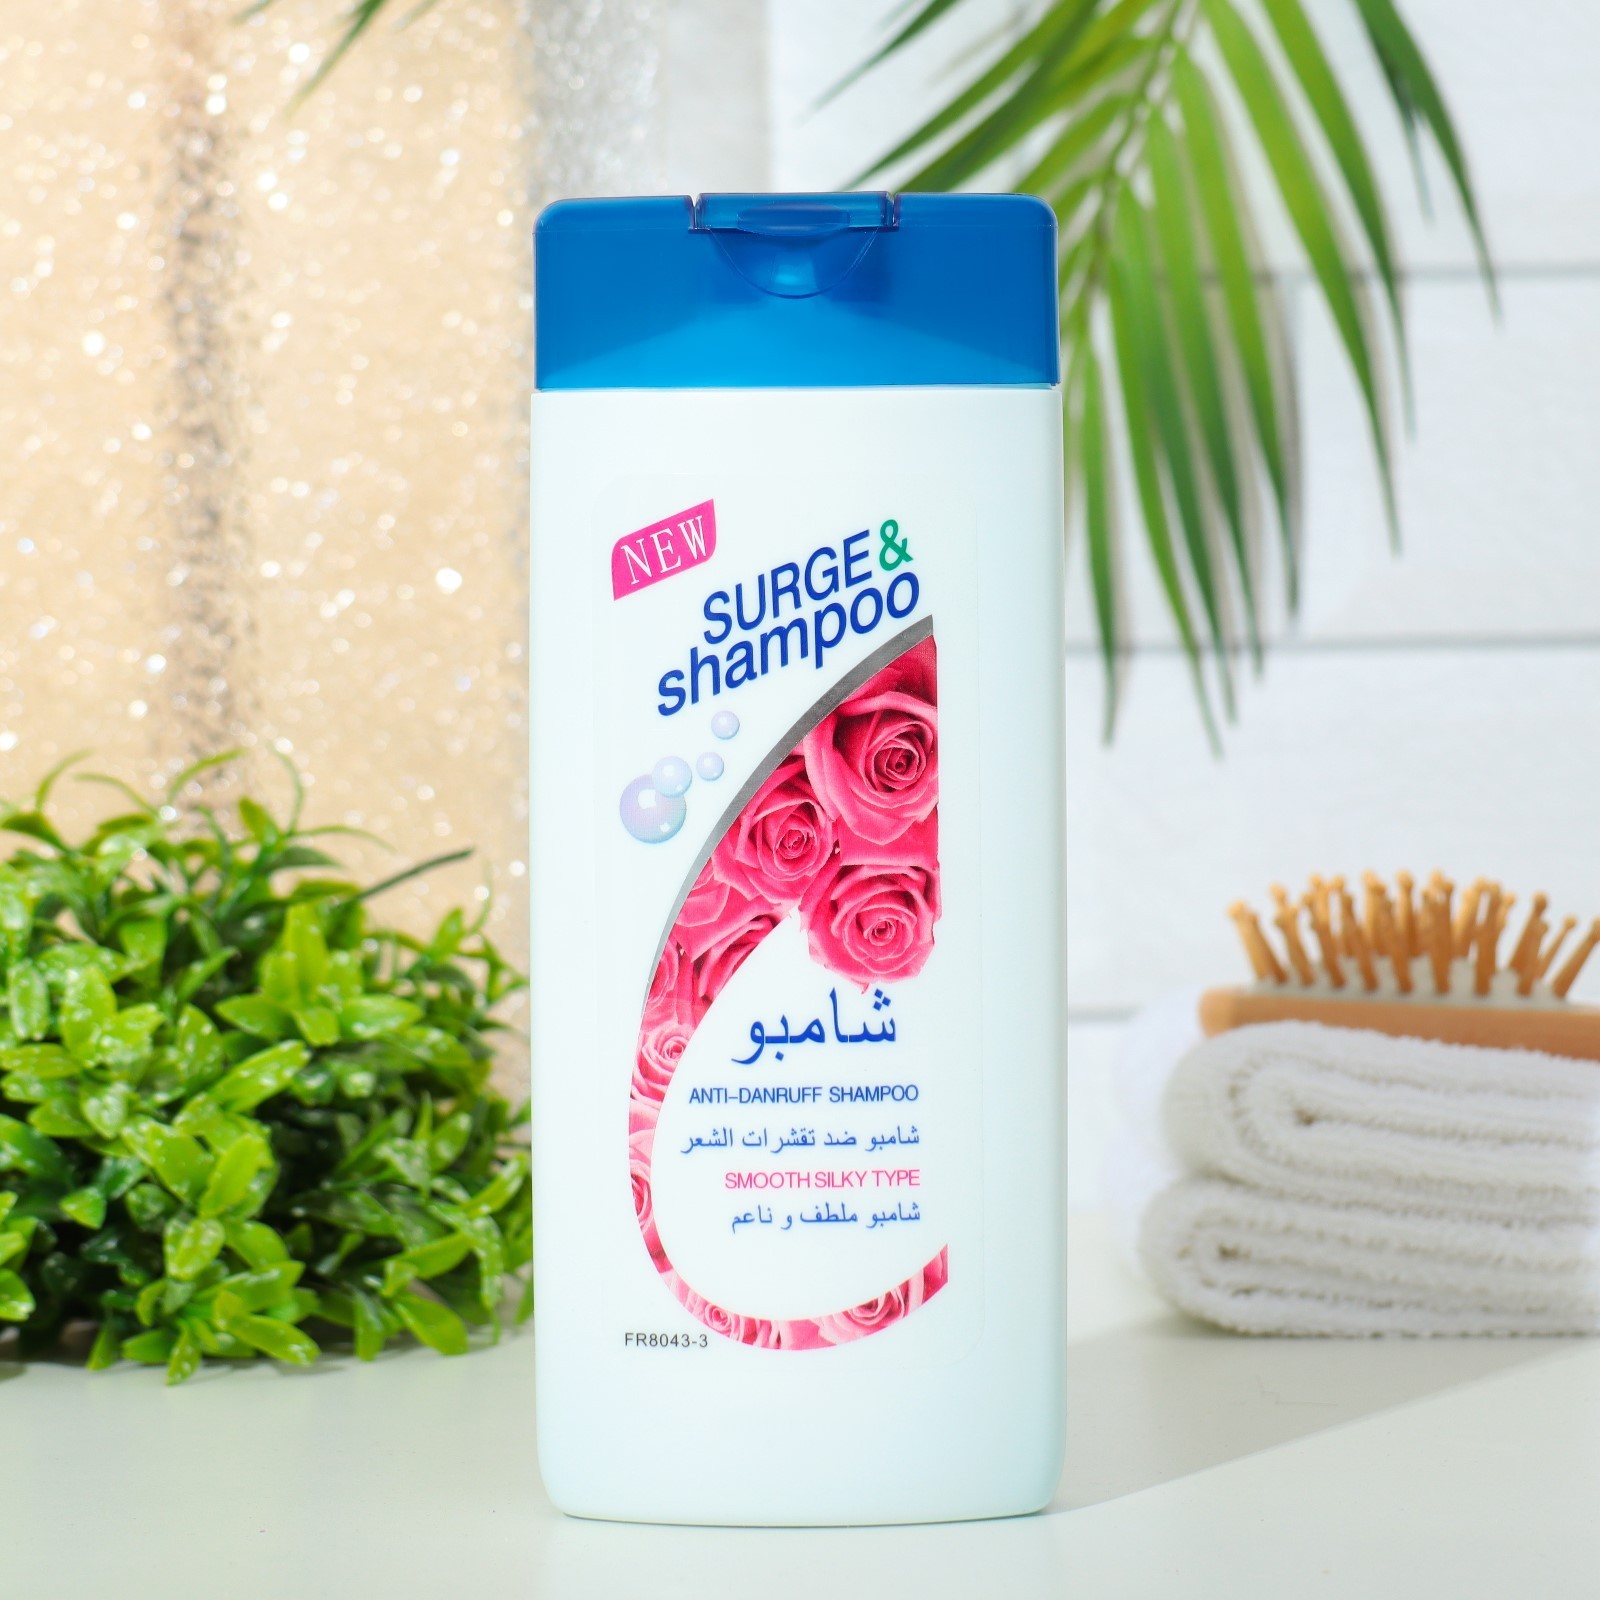 Шампунь Surge&shampoo для волос с розой 400 мл la savonnerie de nyons гостевое мыло с розой монмартр 25 0